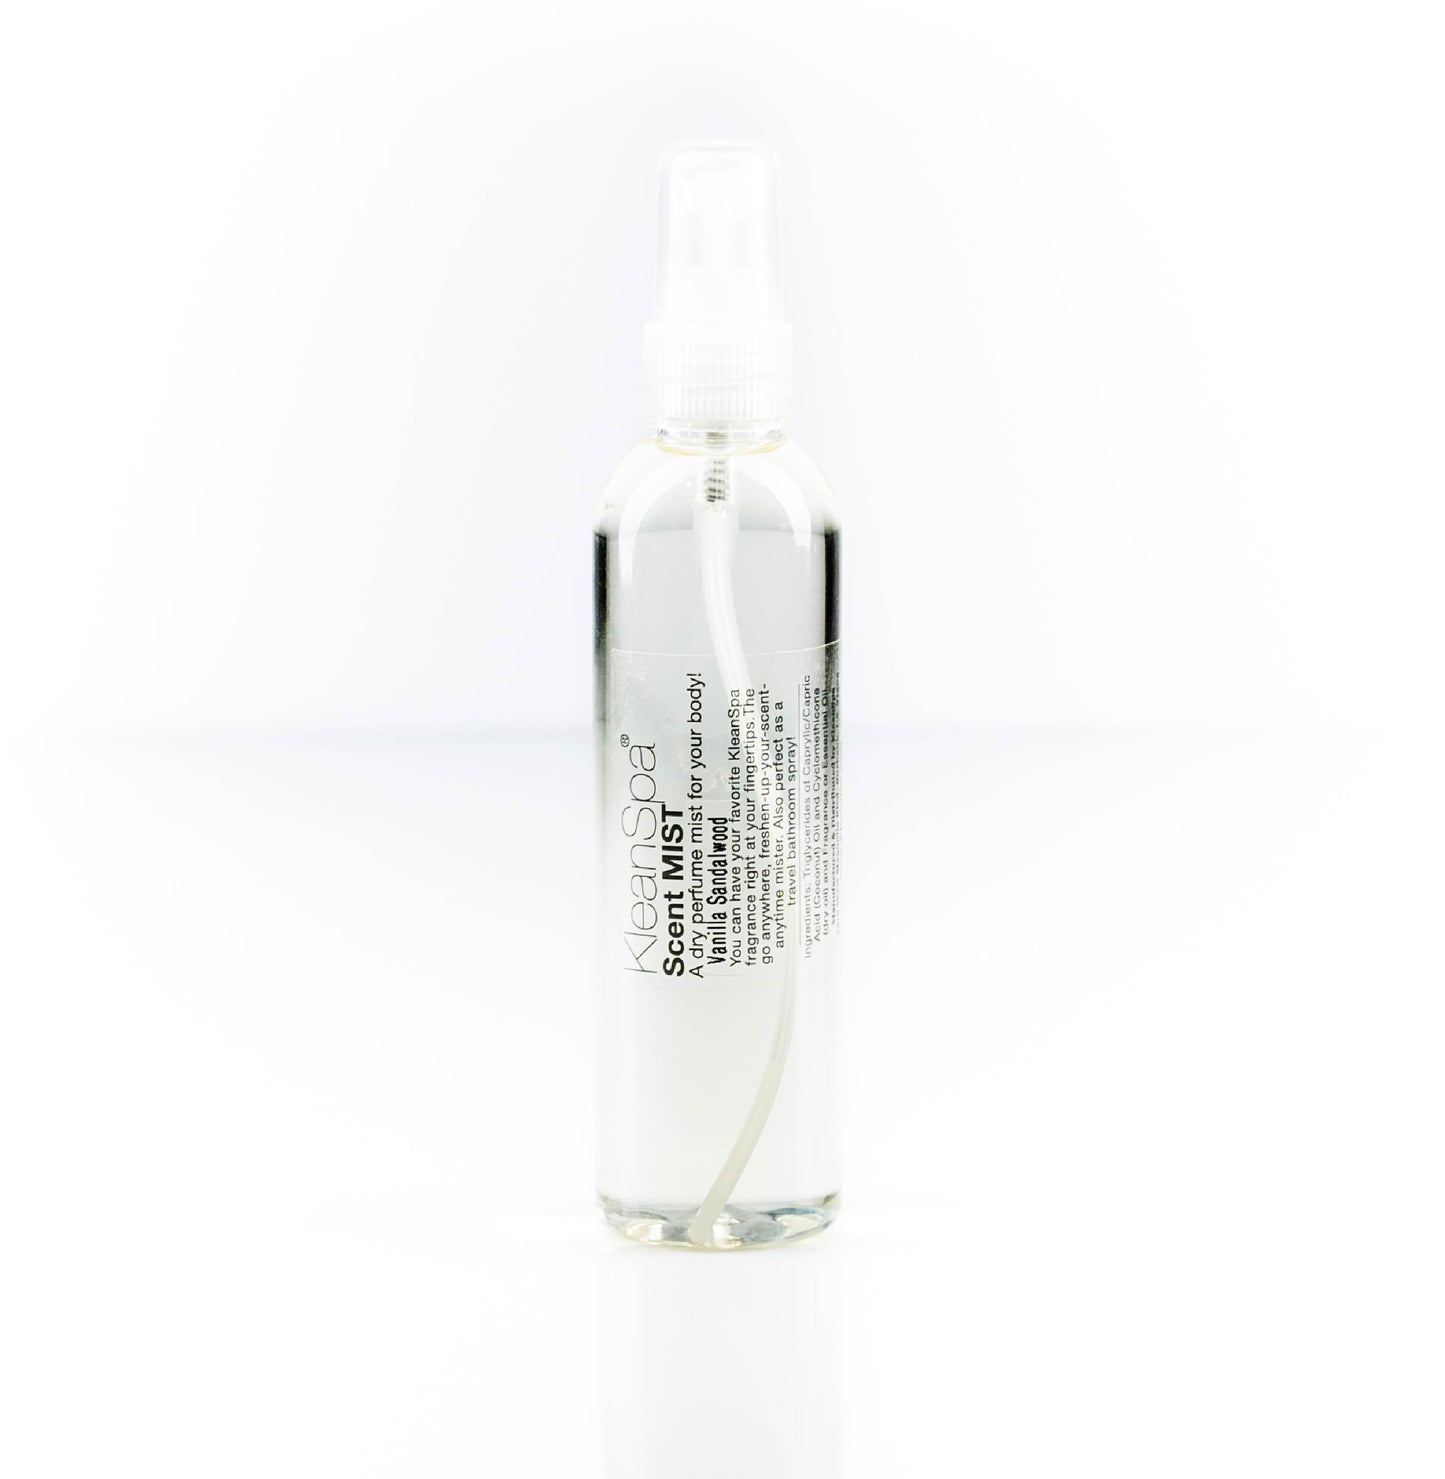 vanilla grapefruit dry oil spray large bottle